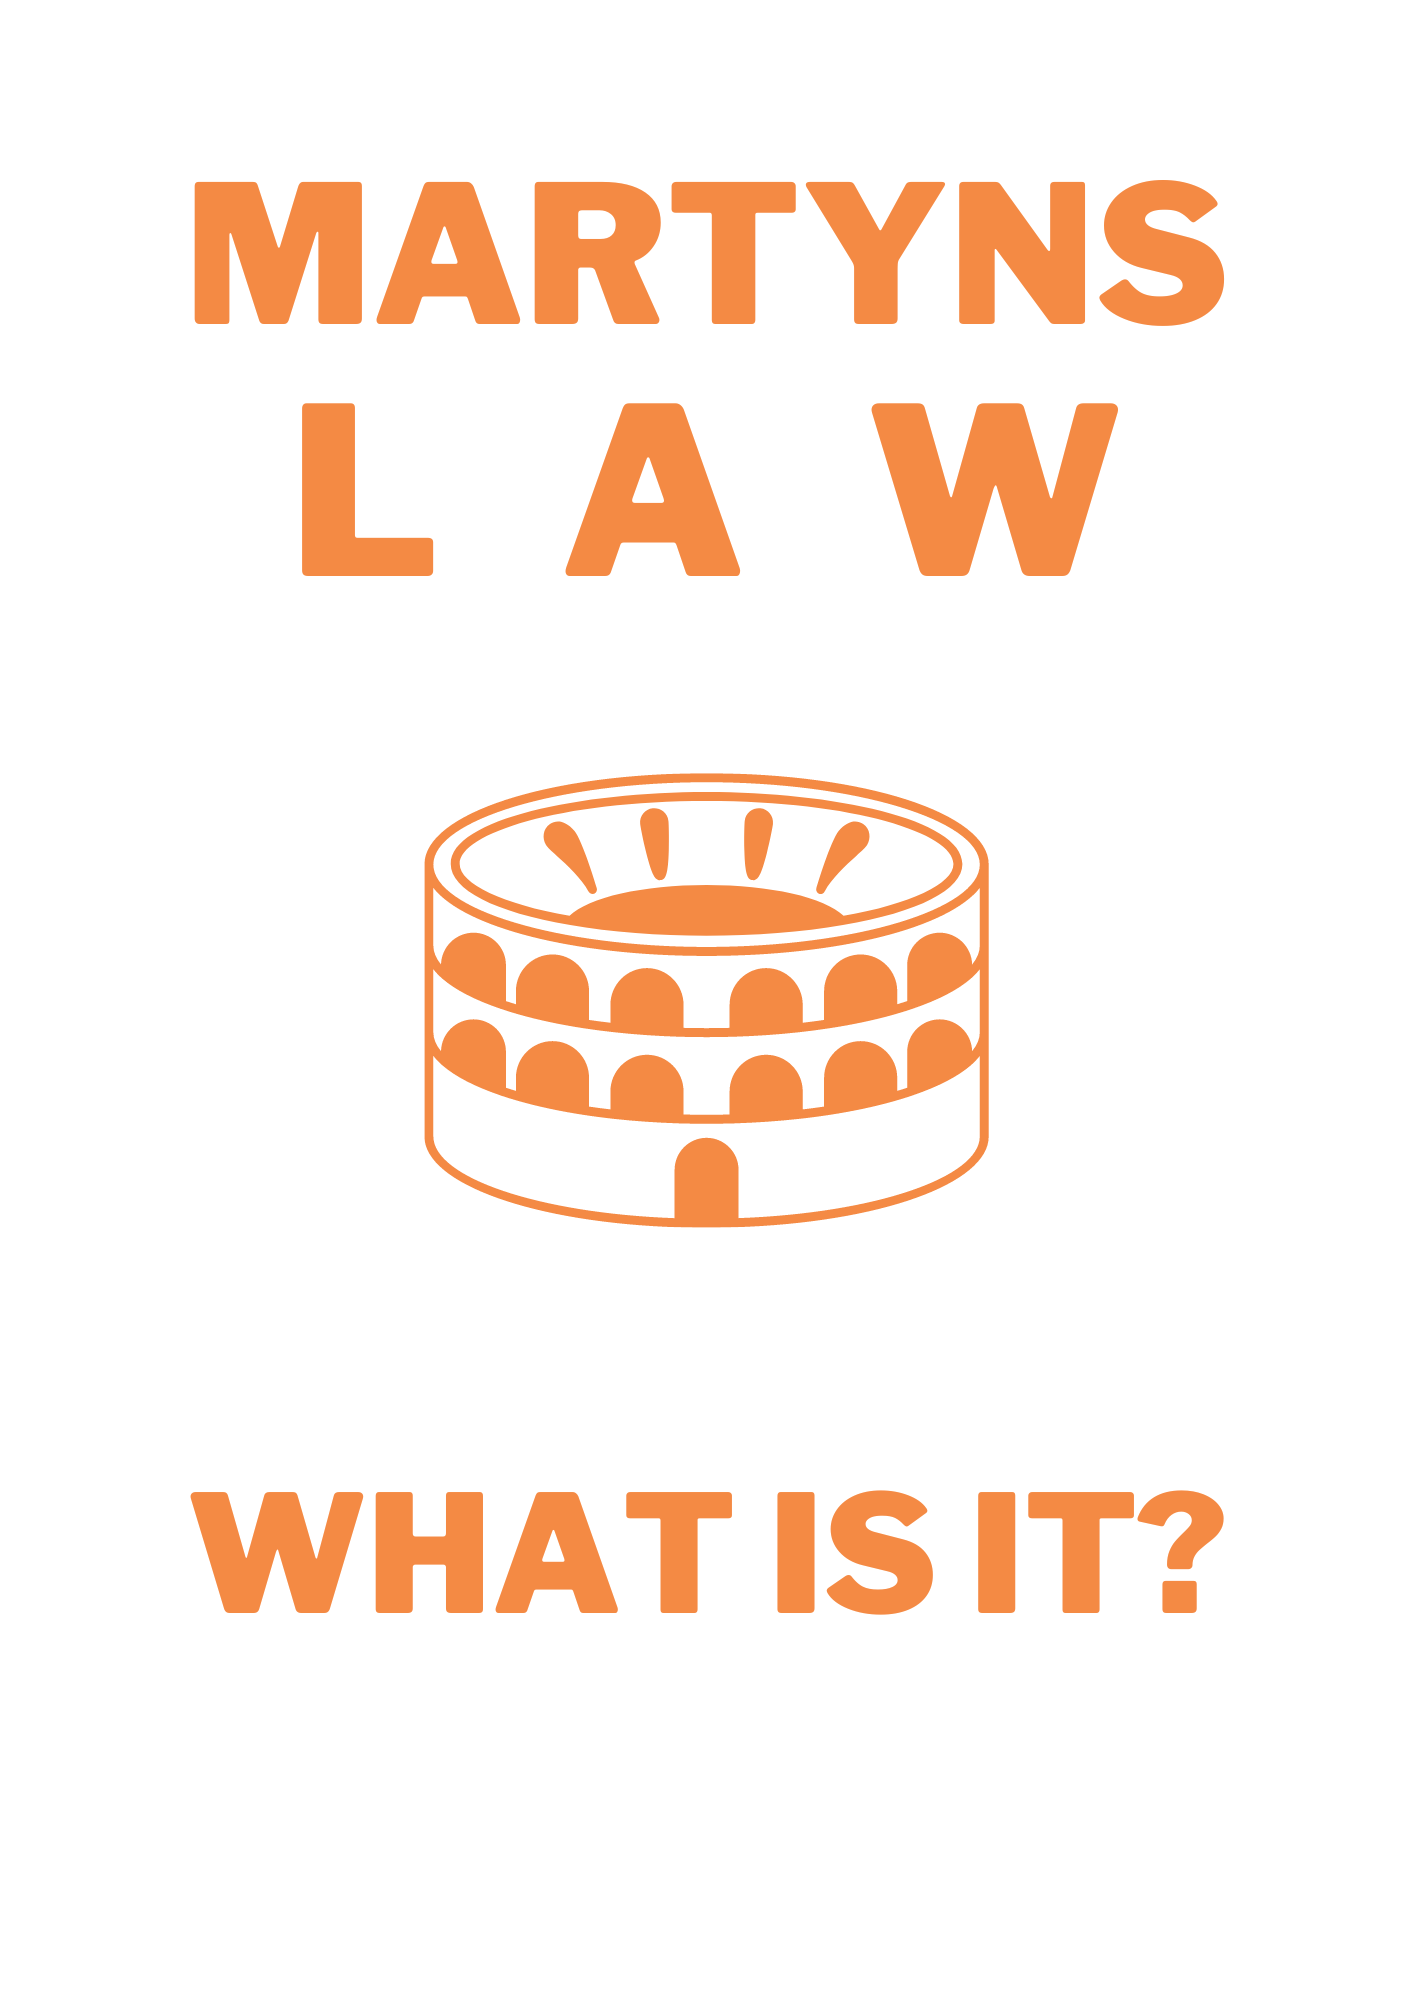 Explain what is Martyn's law legislation